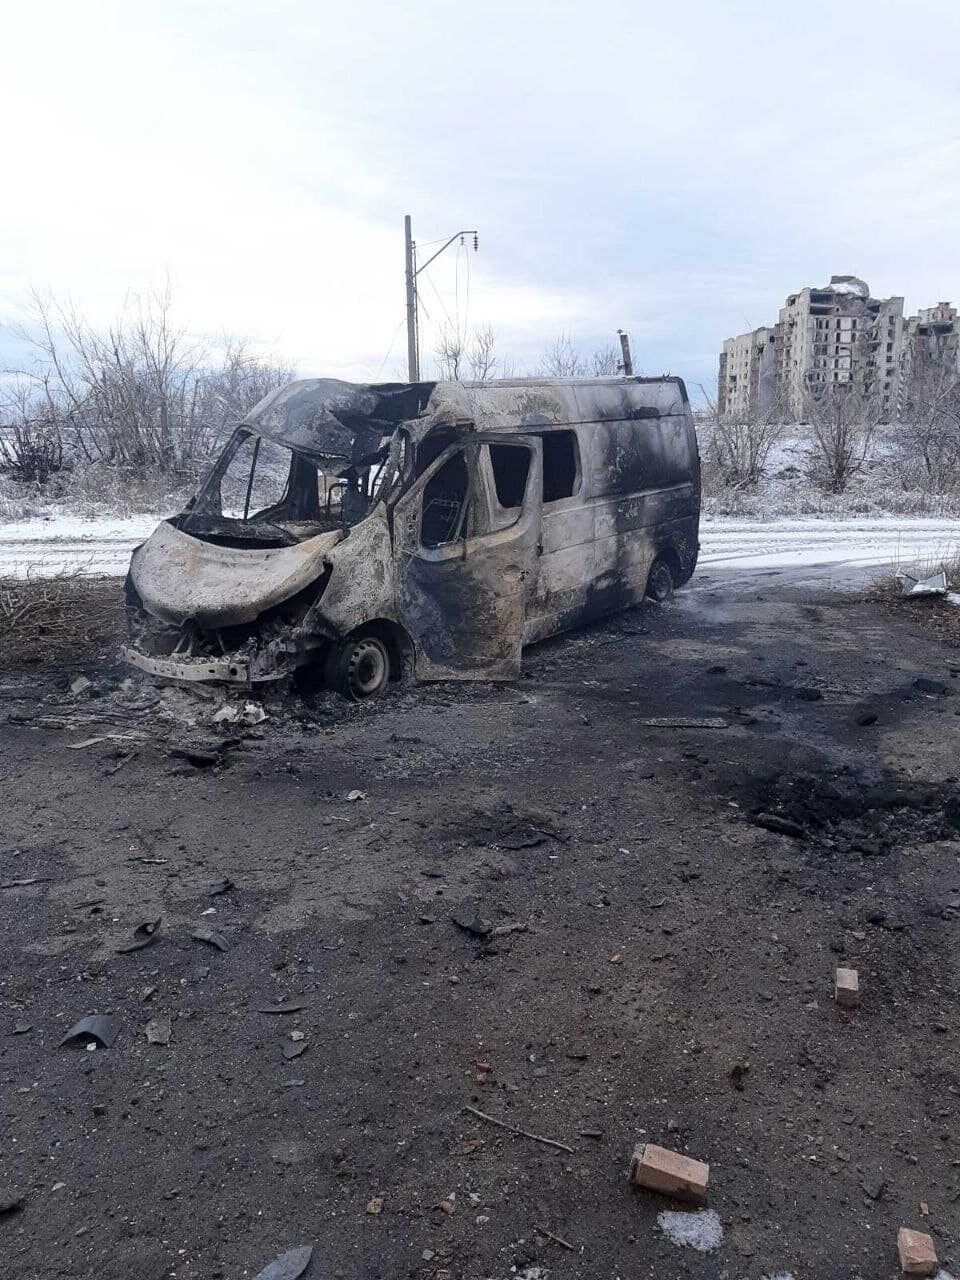 В Авдеевке оккупанты ранили украинского волонтера, его авто добили вторым ударом. Фото и детали